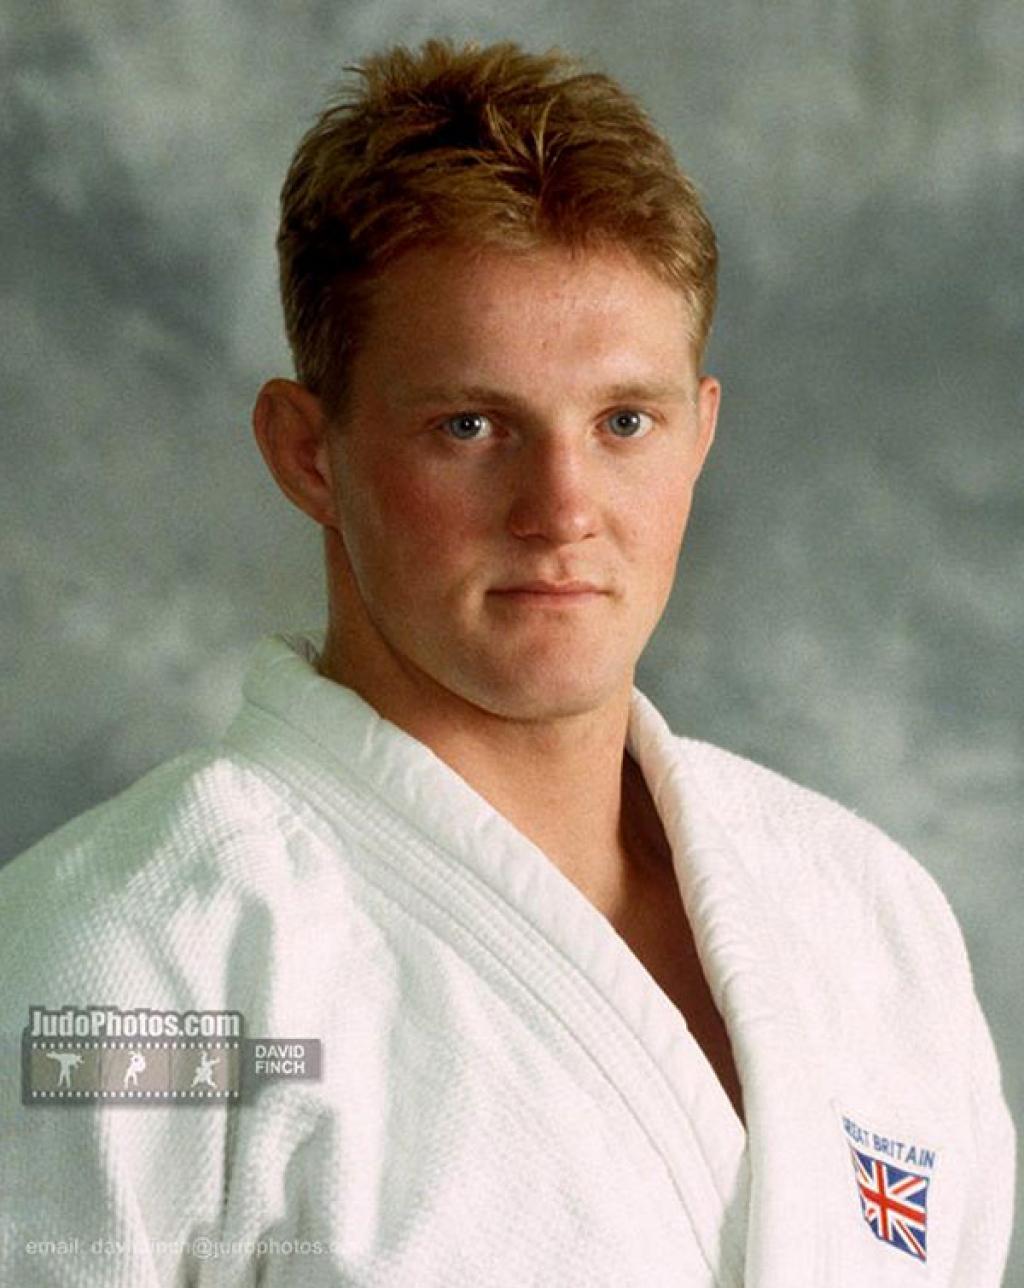 British Judo mourns the death of Ryan Birch